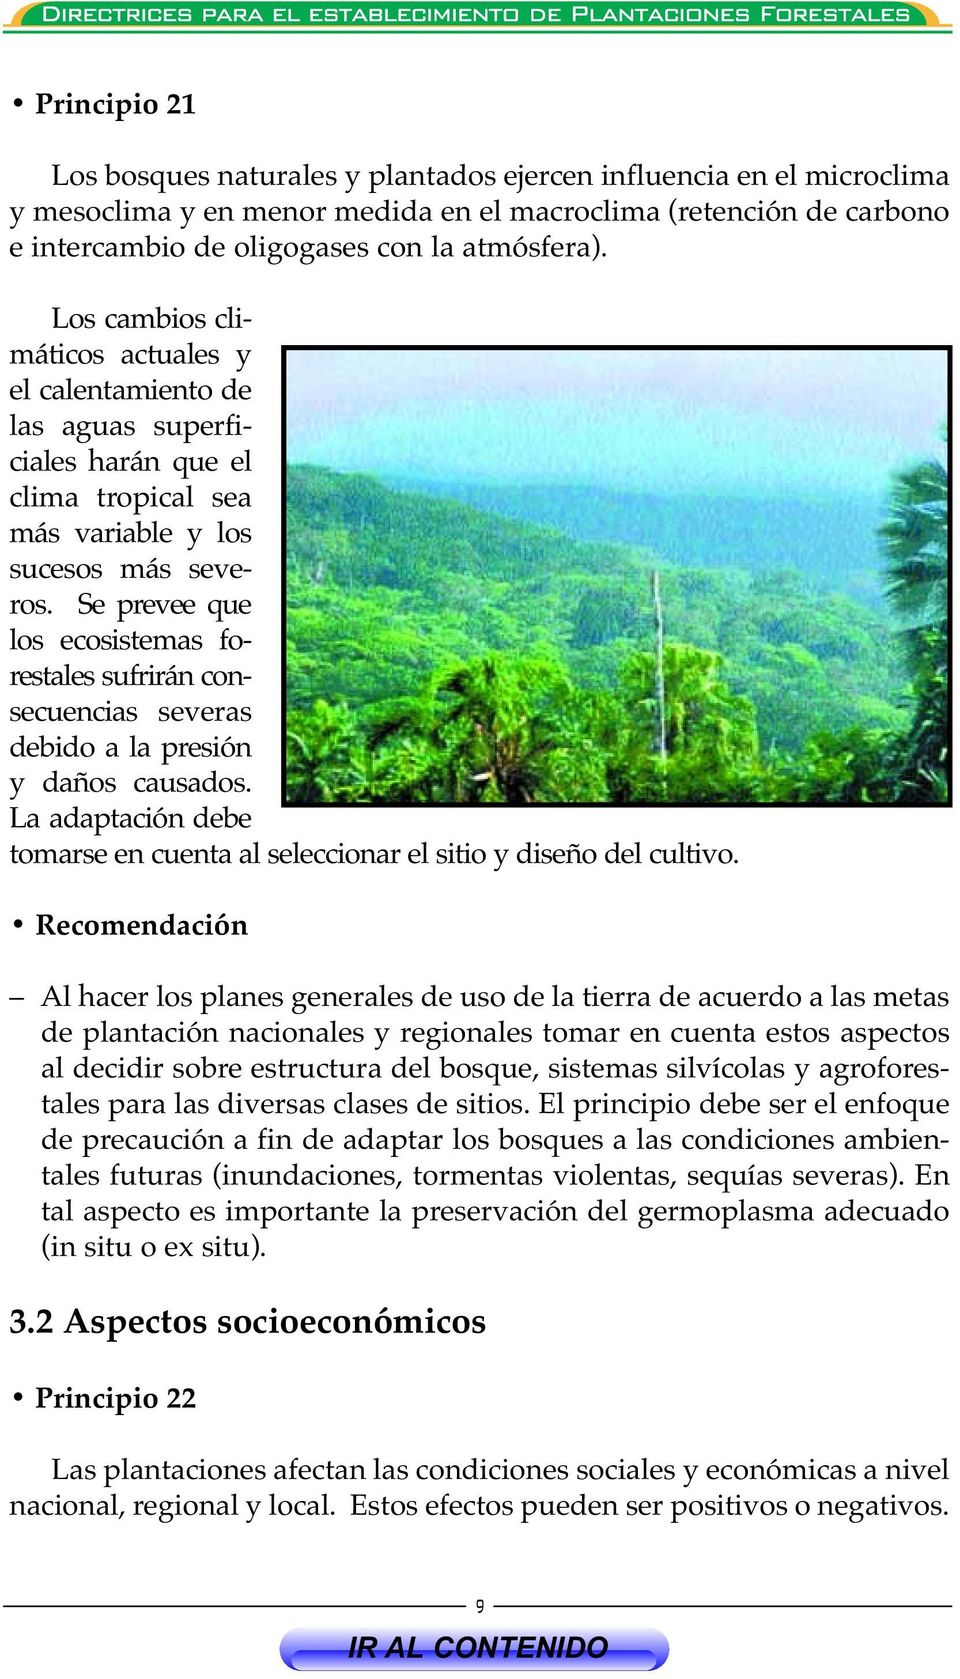 Se prevee que los ecosistemas forestales sufrirán consecuencias severas debido a la presión y daños causados. La adaptación debe tomarse en cuenta al seleccionar el sitio y diseño del cultivo.